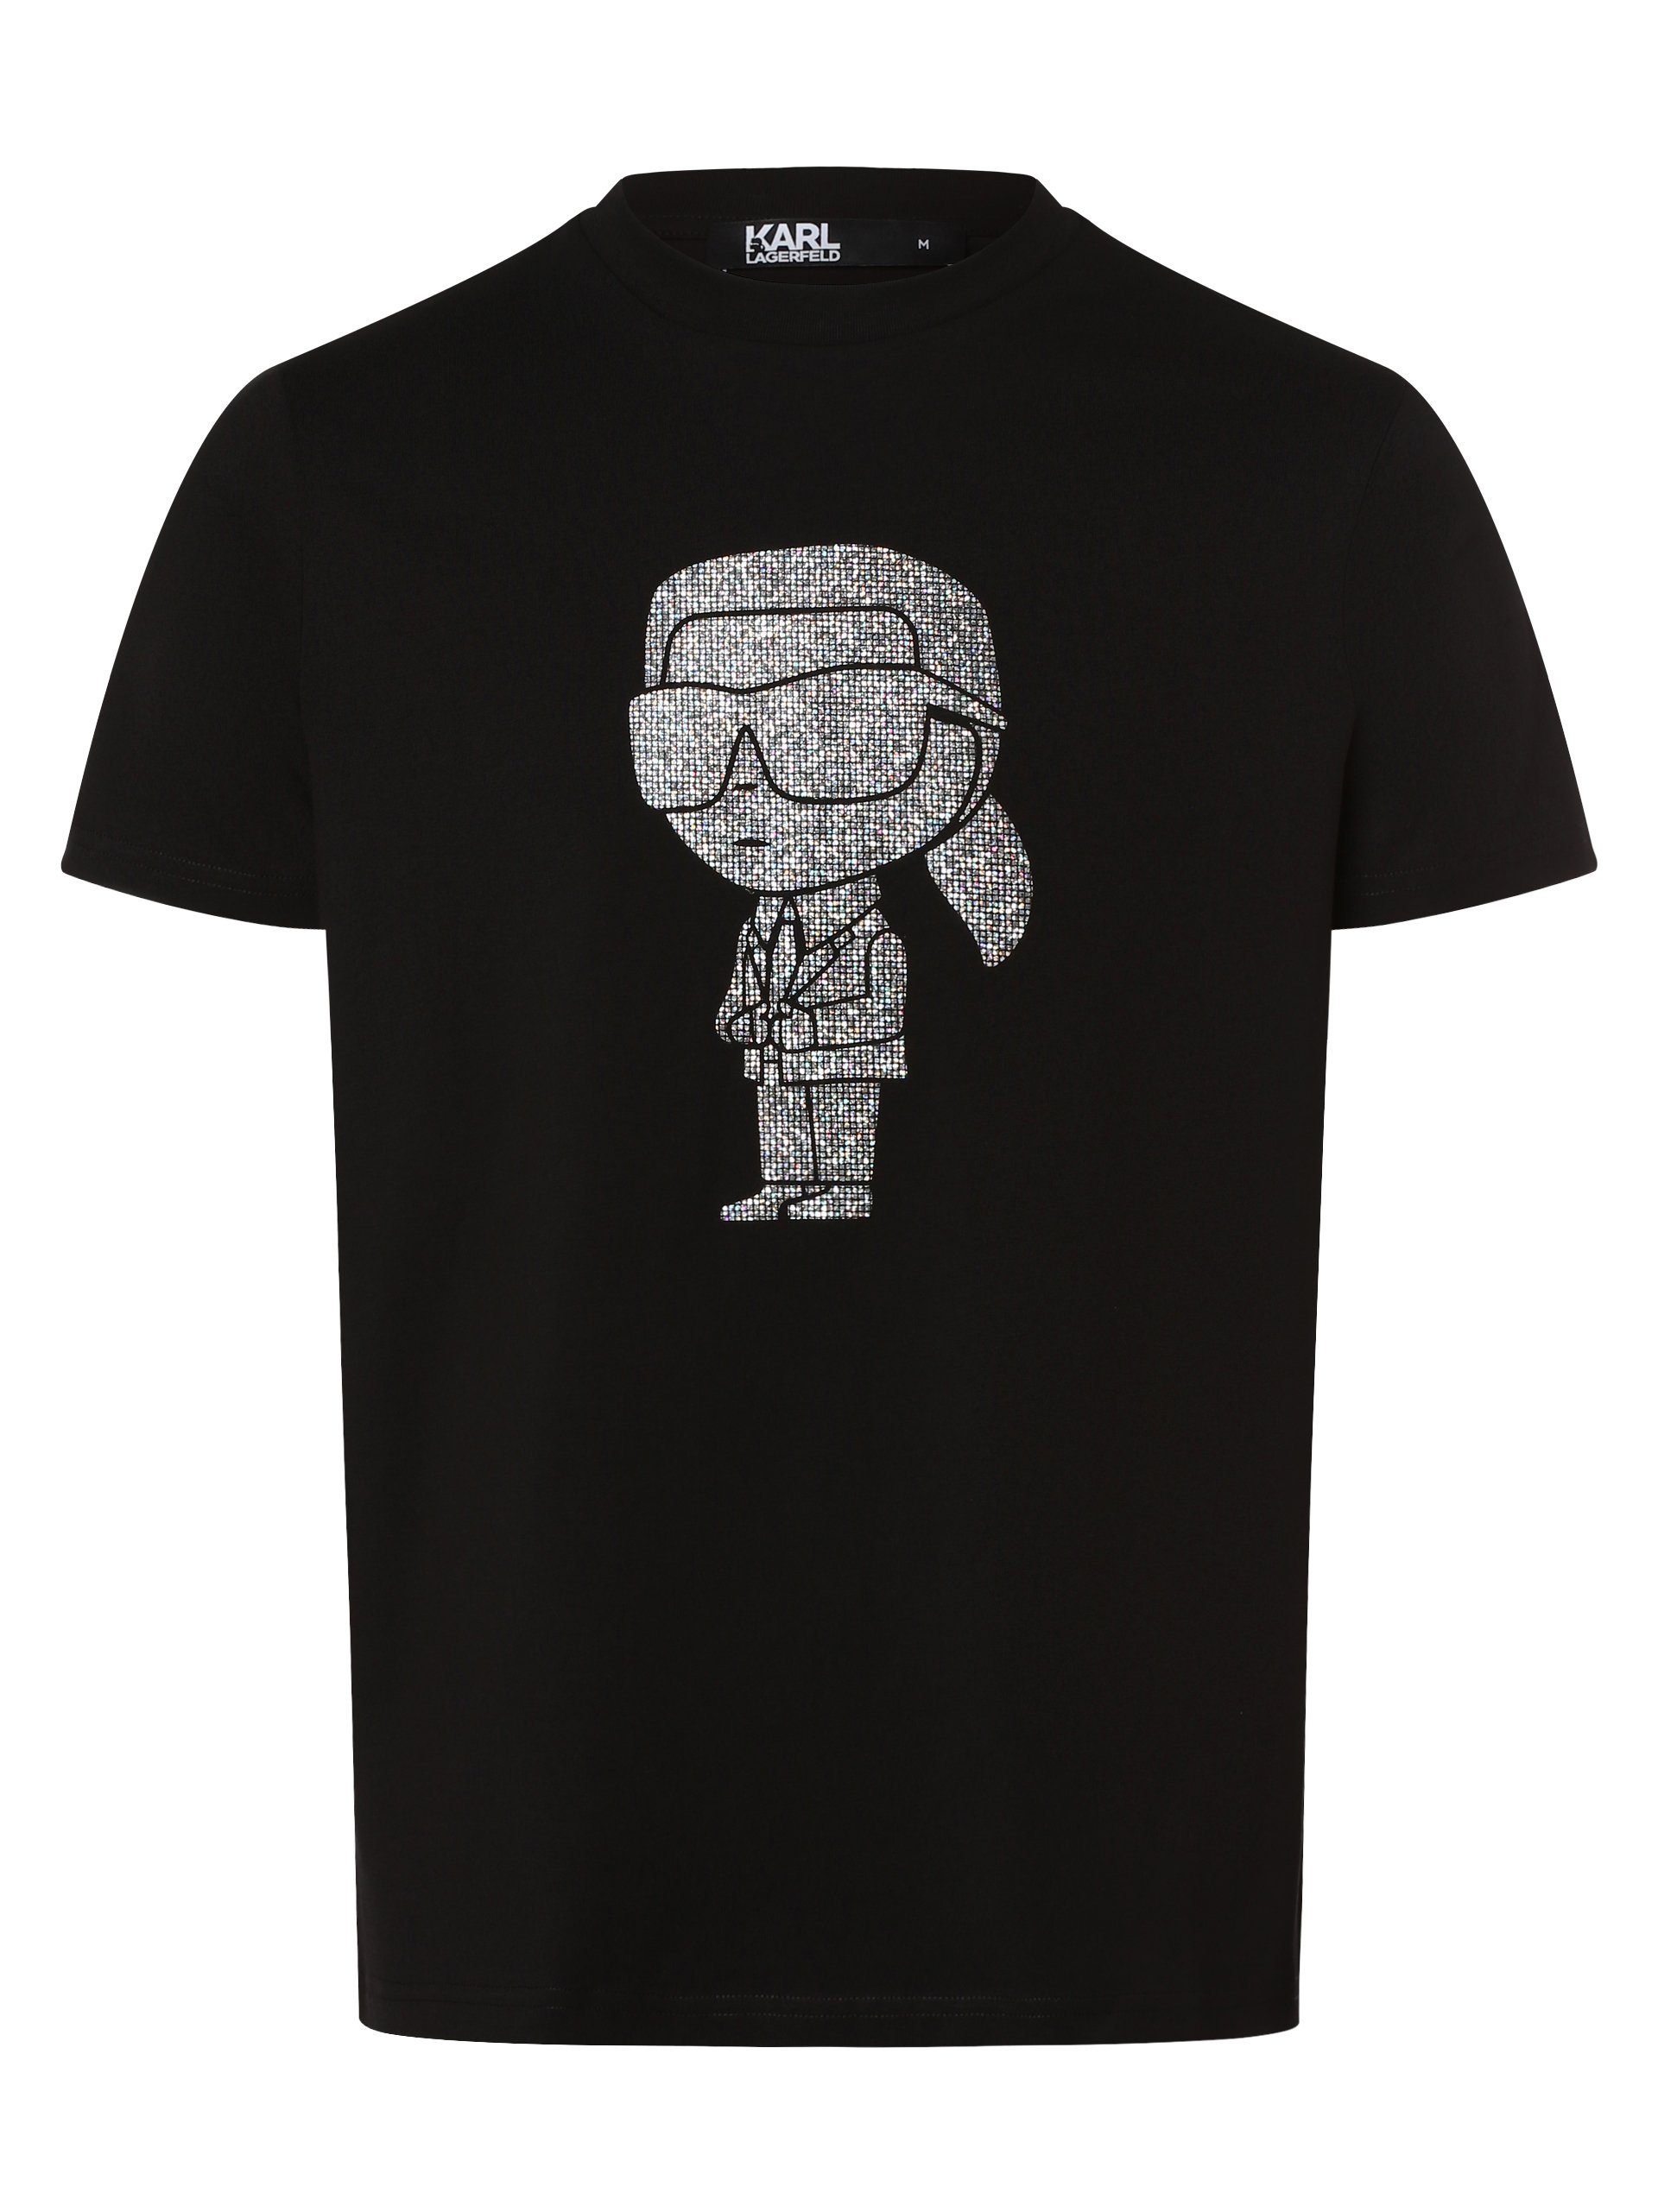 KARL LAGERFELD T-Shirt schwarz silber